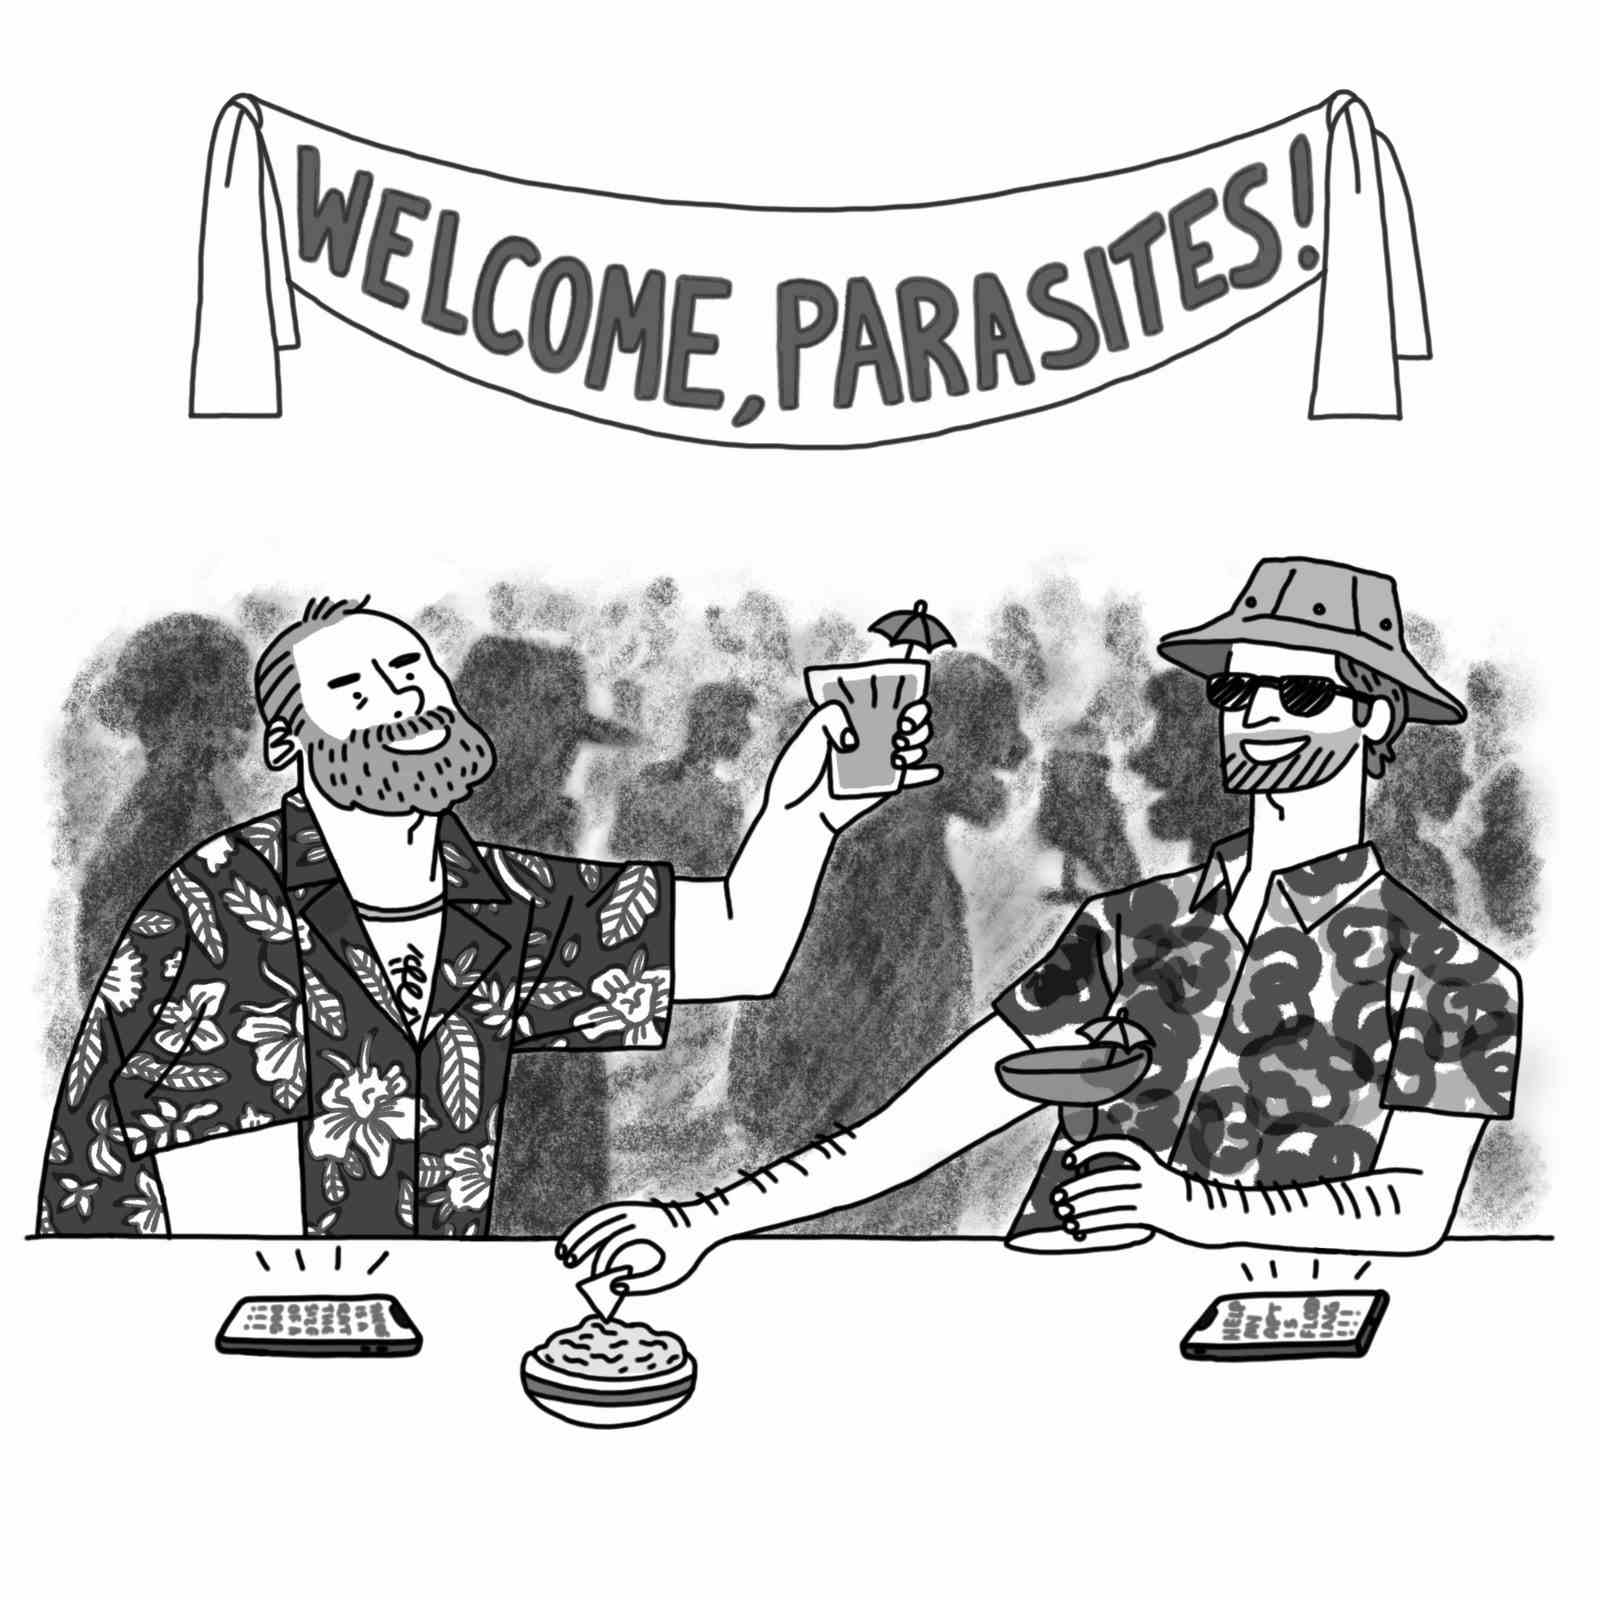 Zwei Männer, die Urlaubshemden tragen und auf einer Tagung mit einem Banner trinken, auf dem Welcome Parasites steht